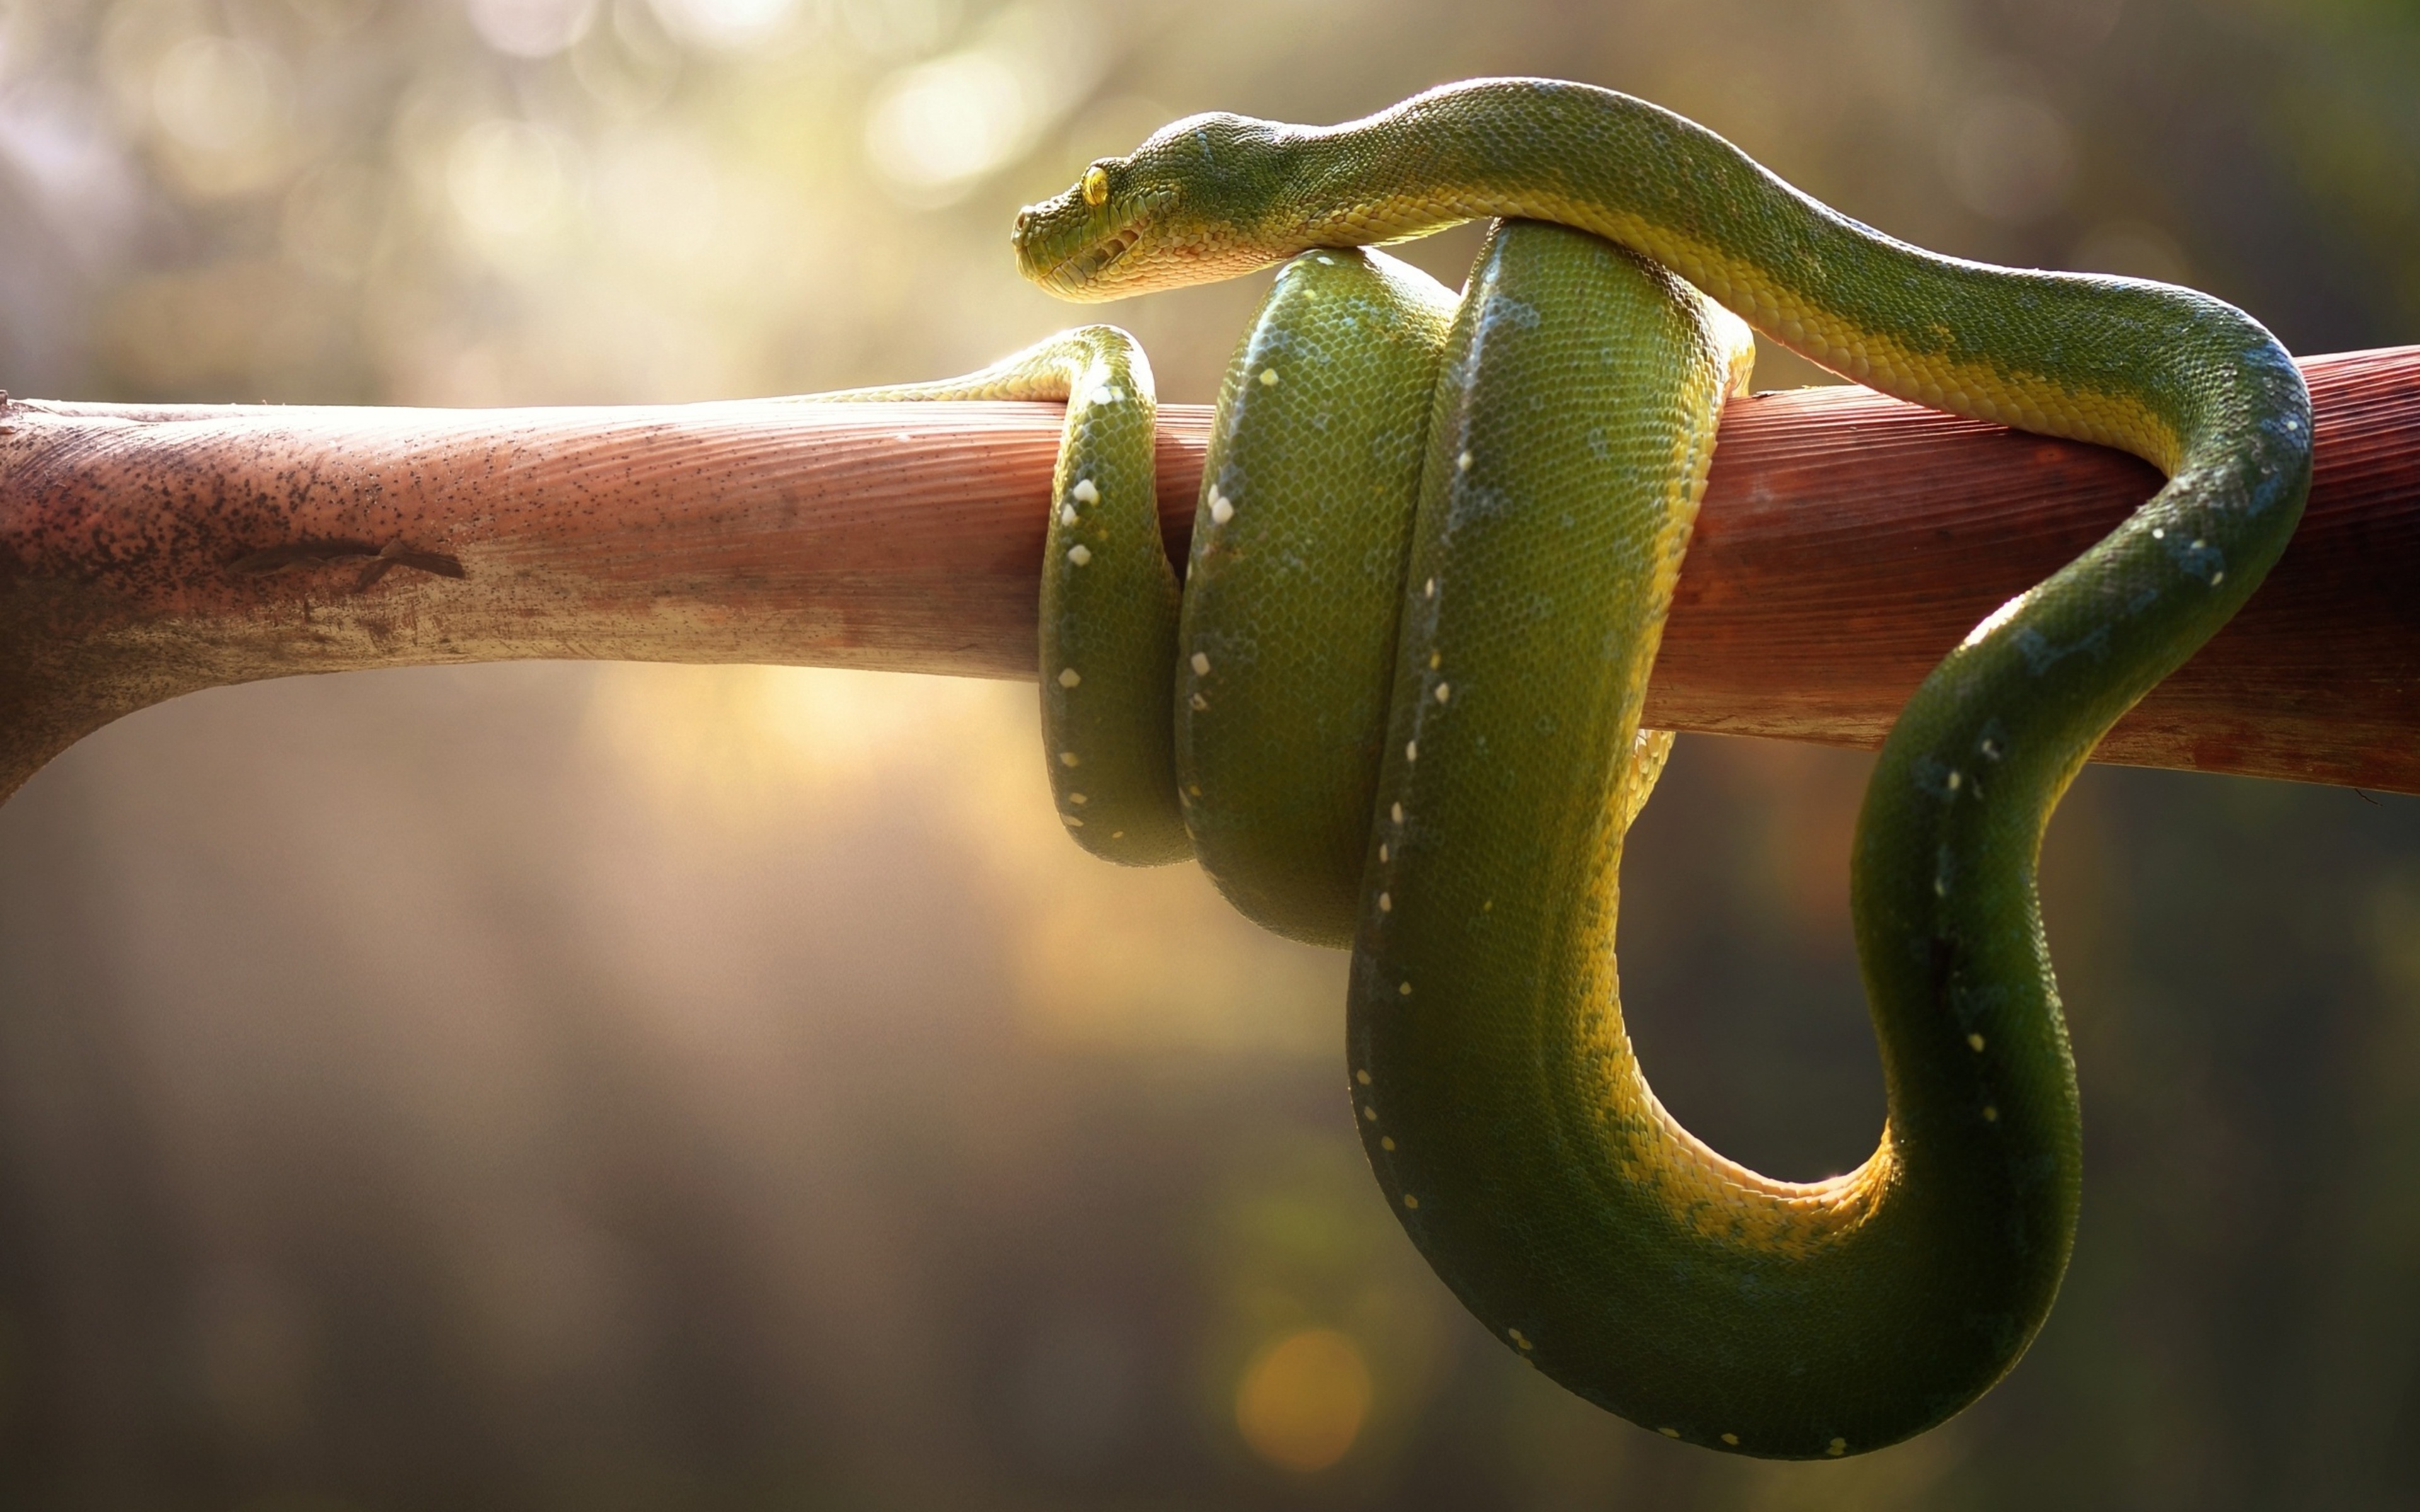 Змеи живут в тропическом лесу